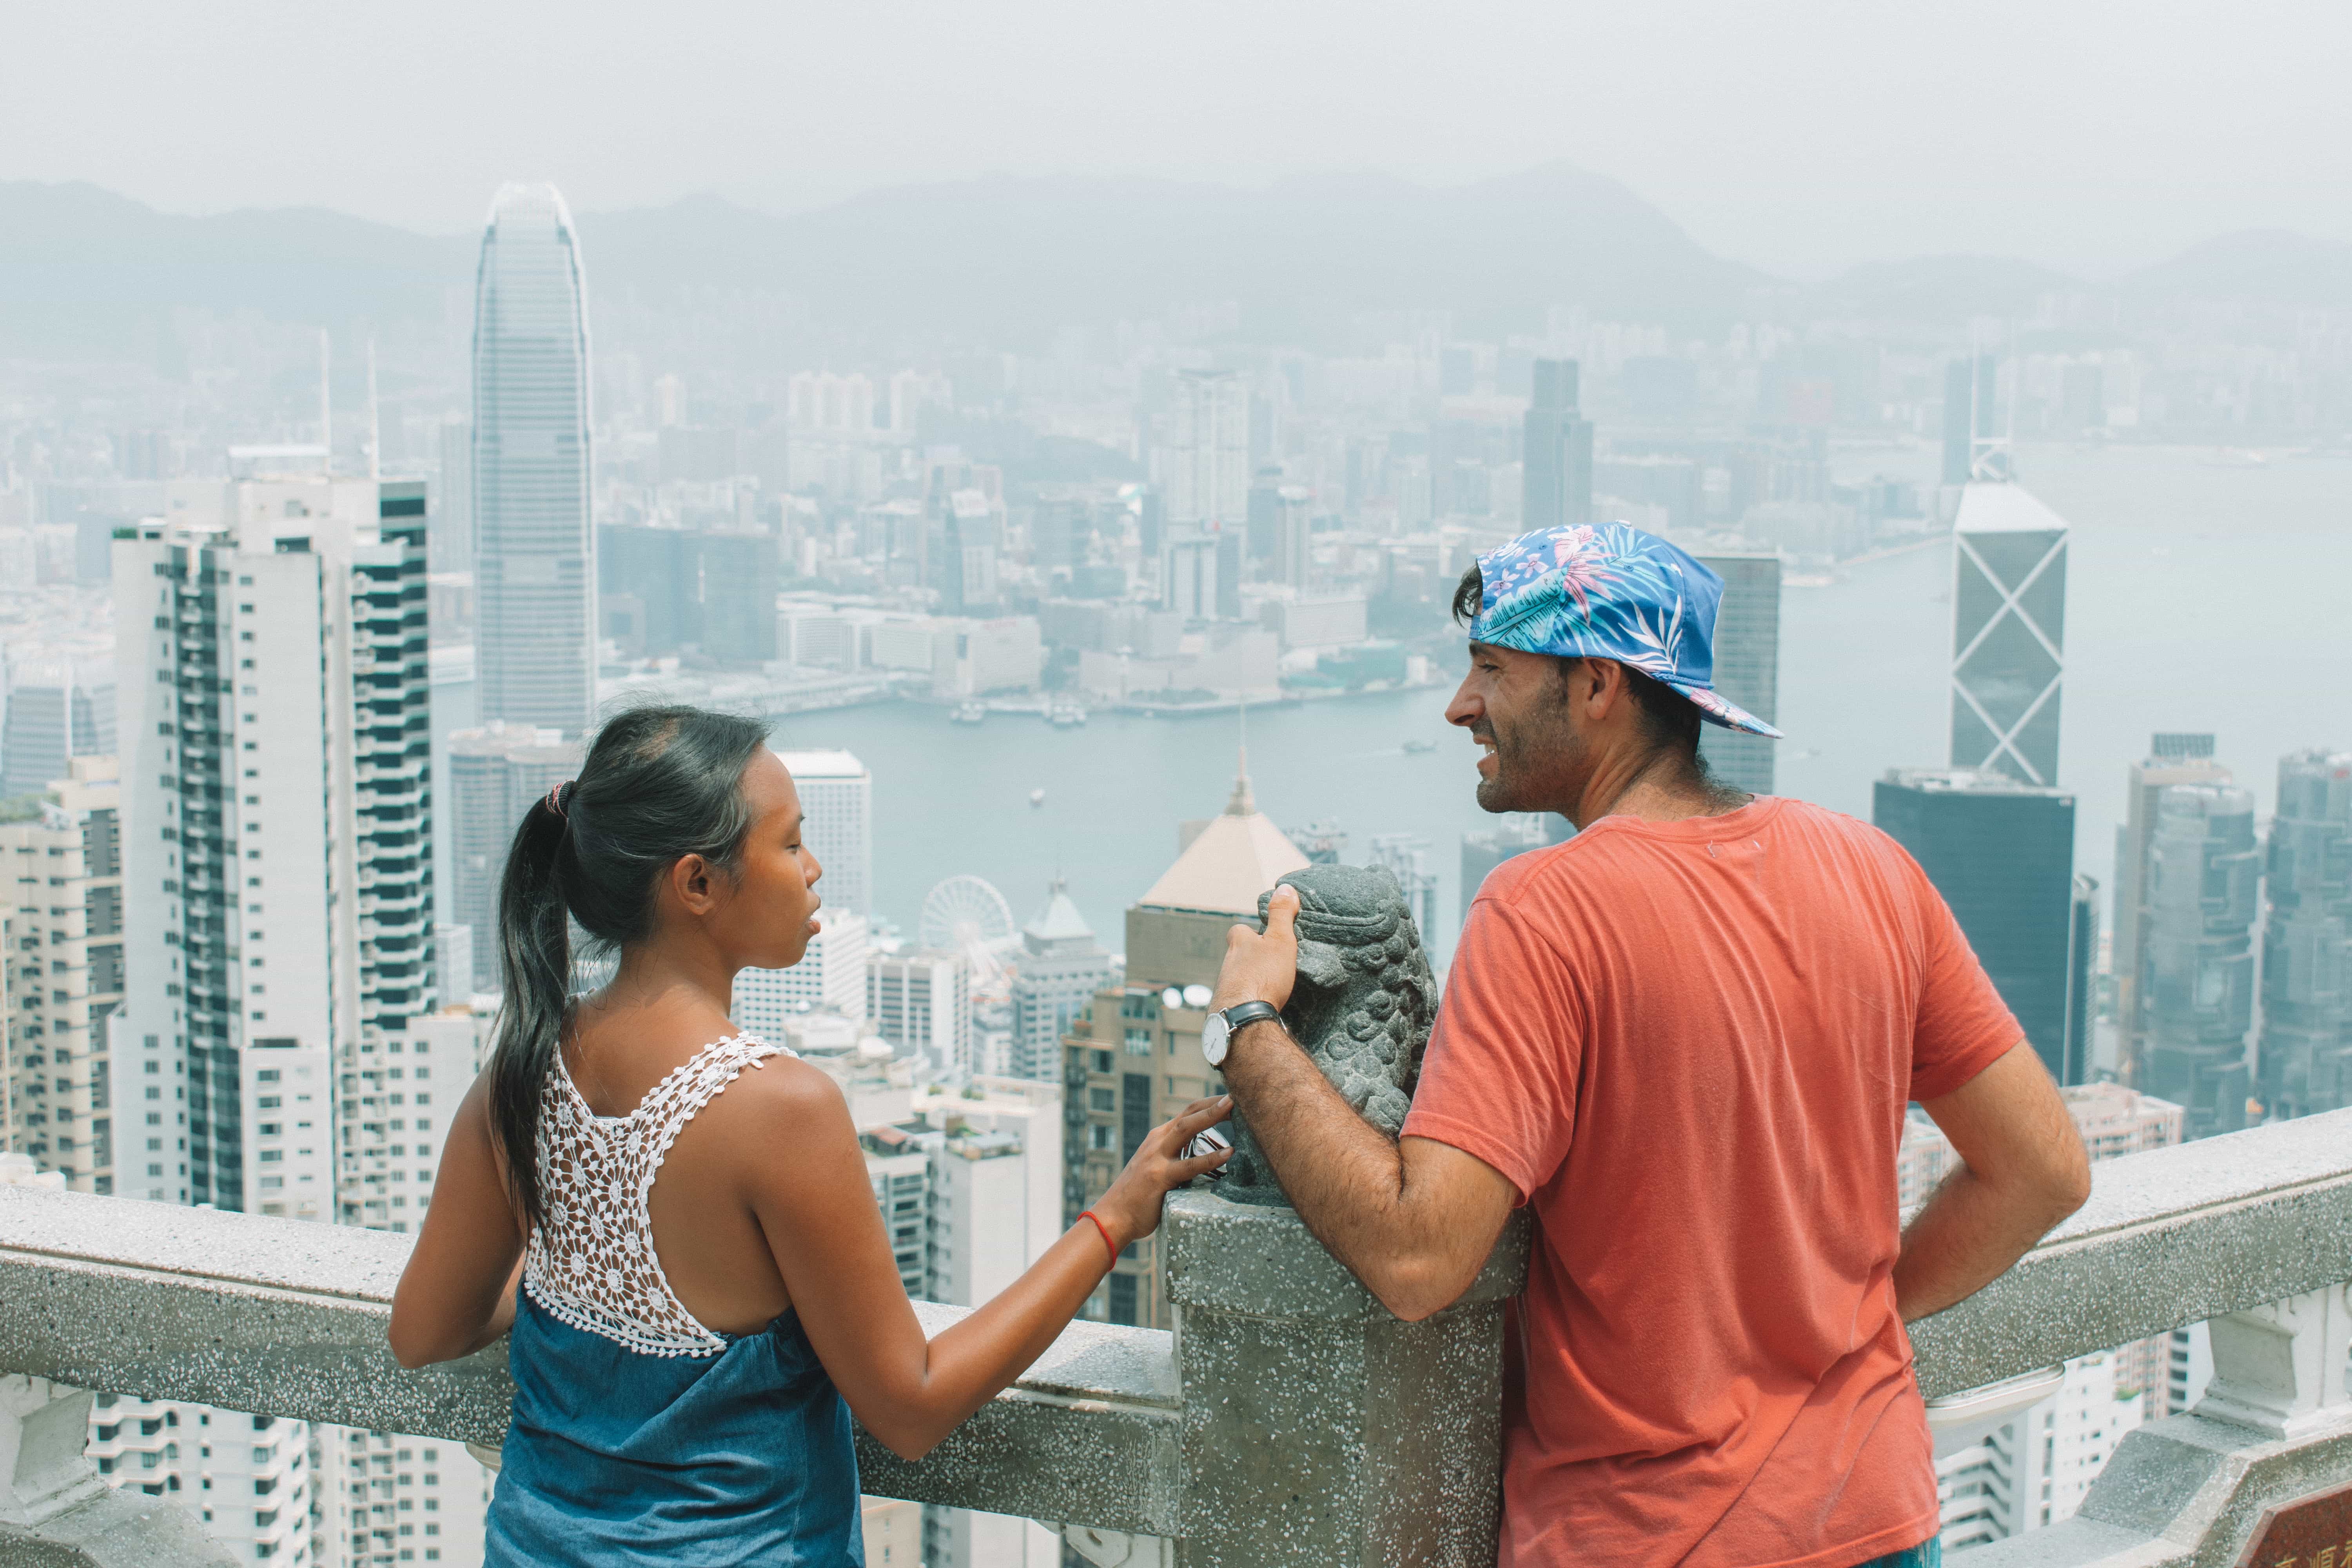 Visit Hong Kong: The Peak